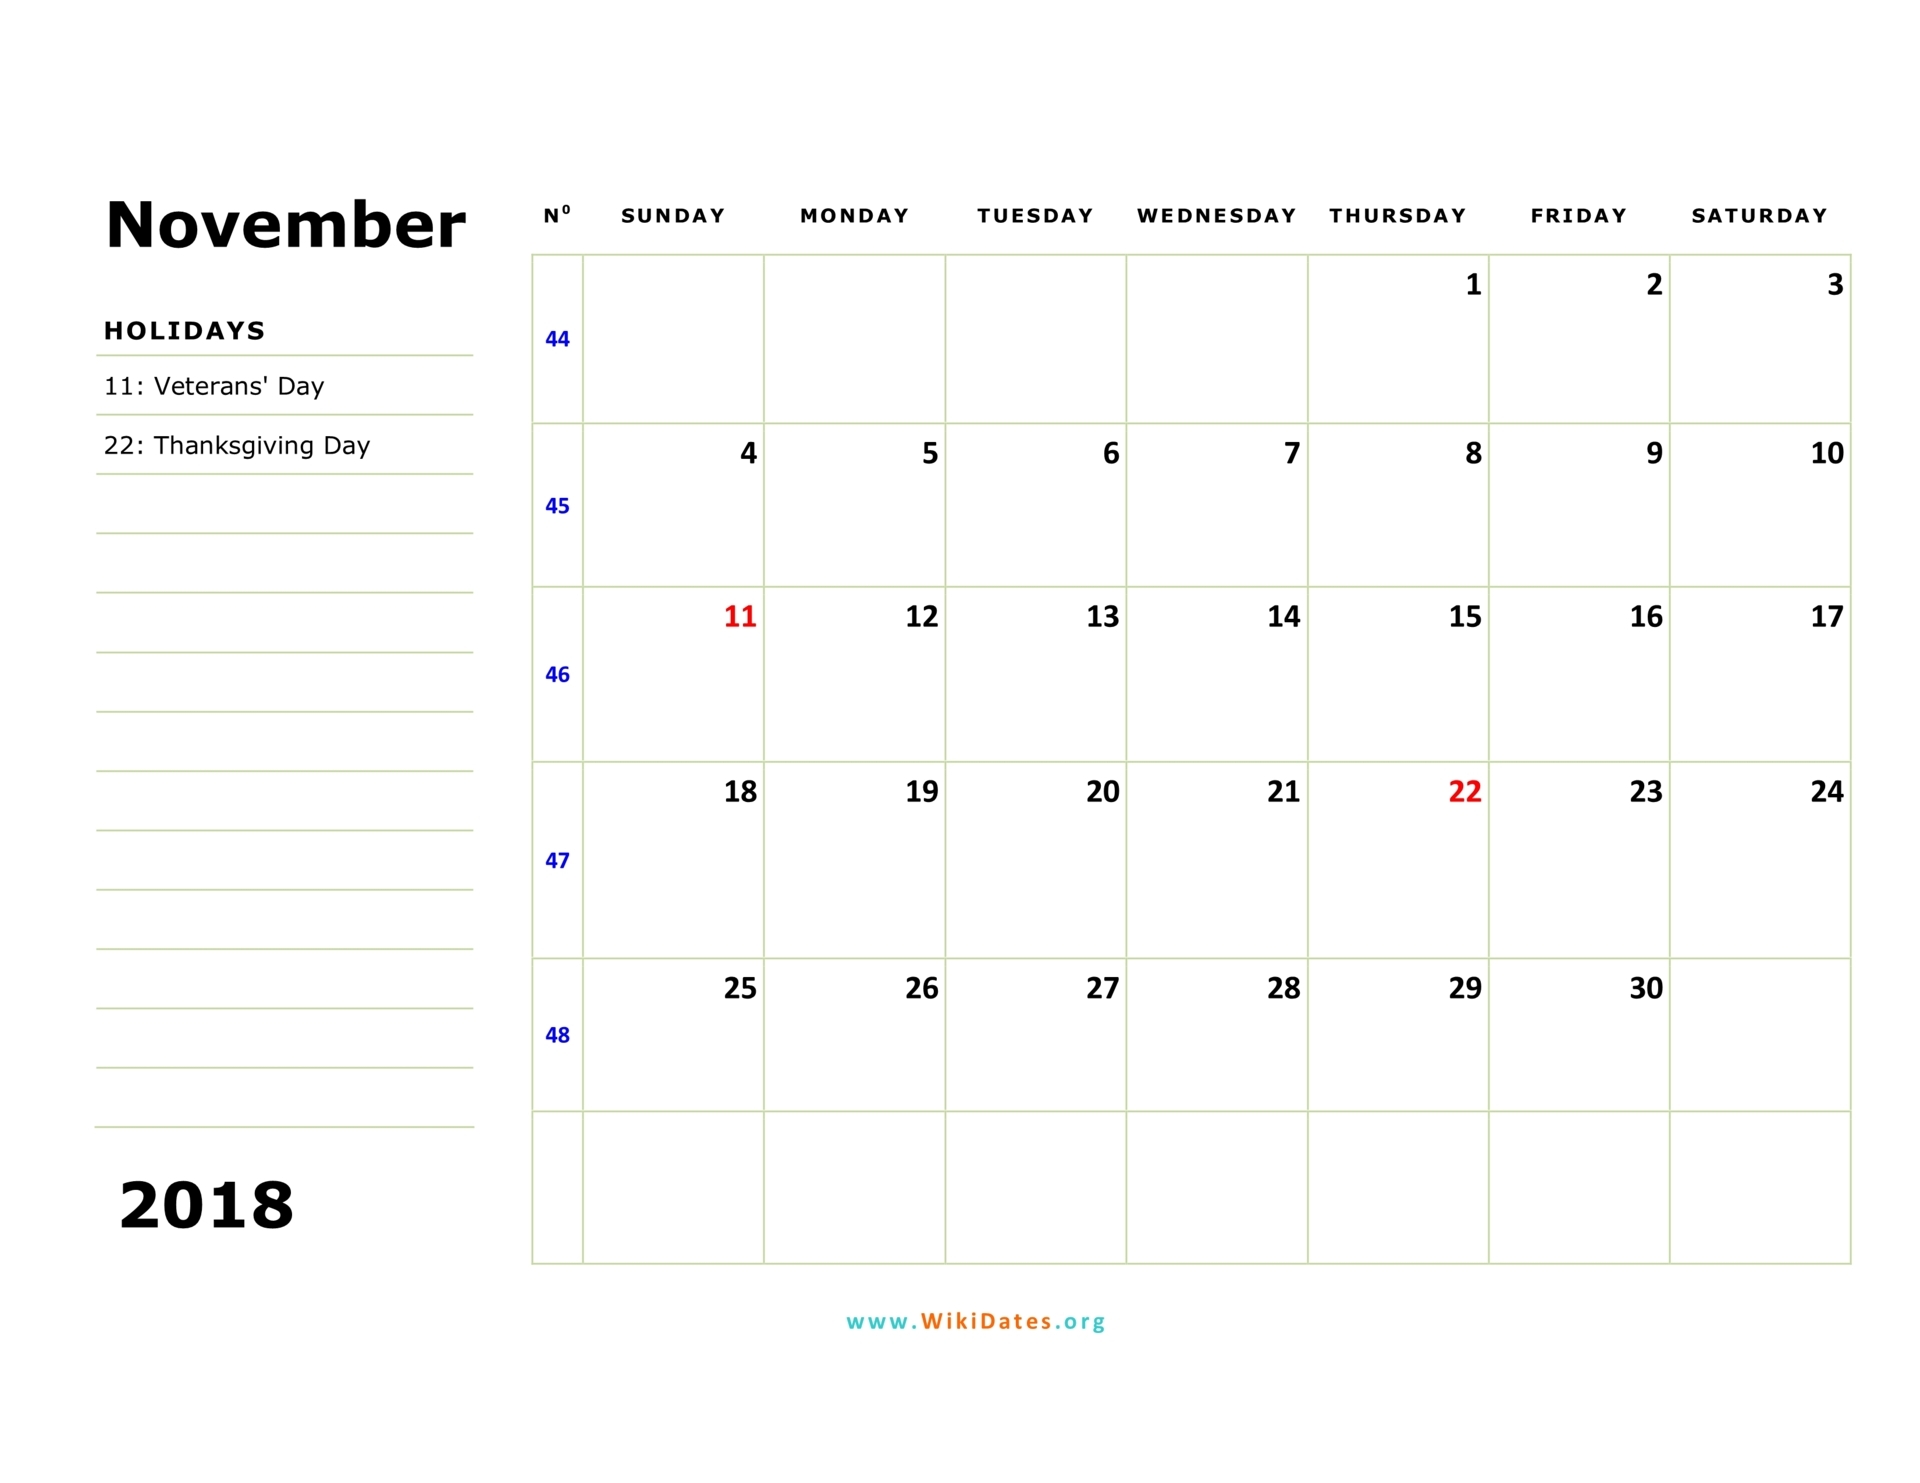 november-2018-calendar-usa-qualads